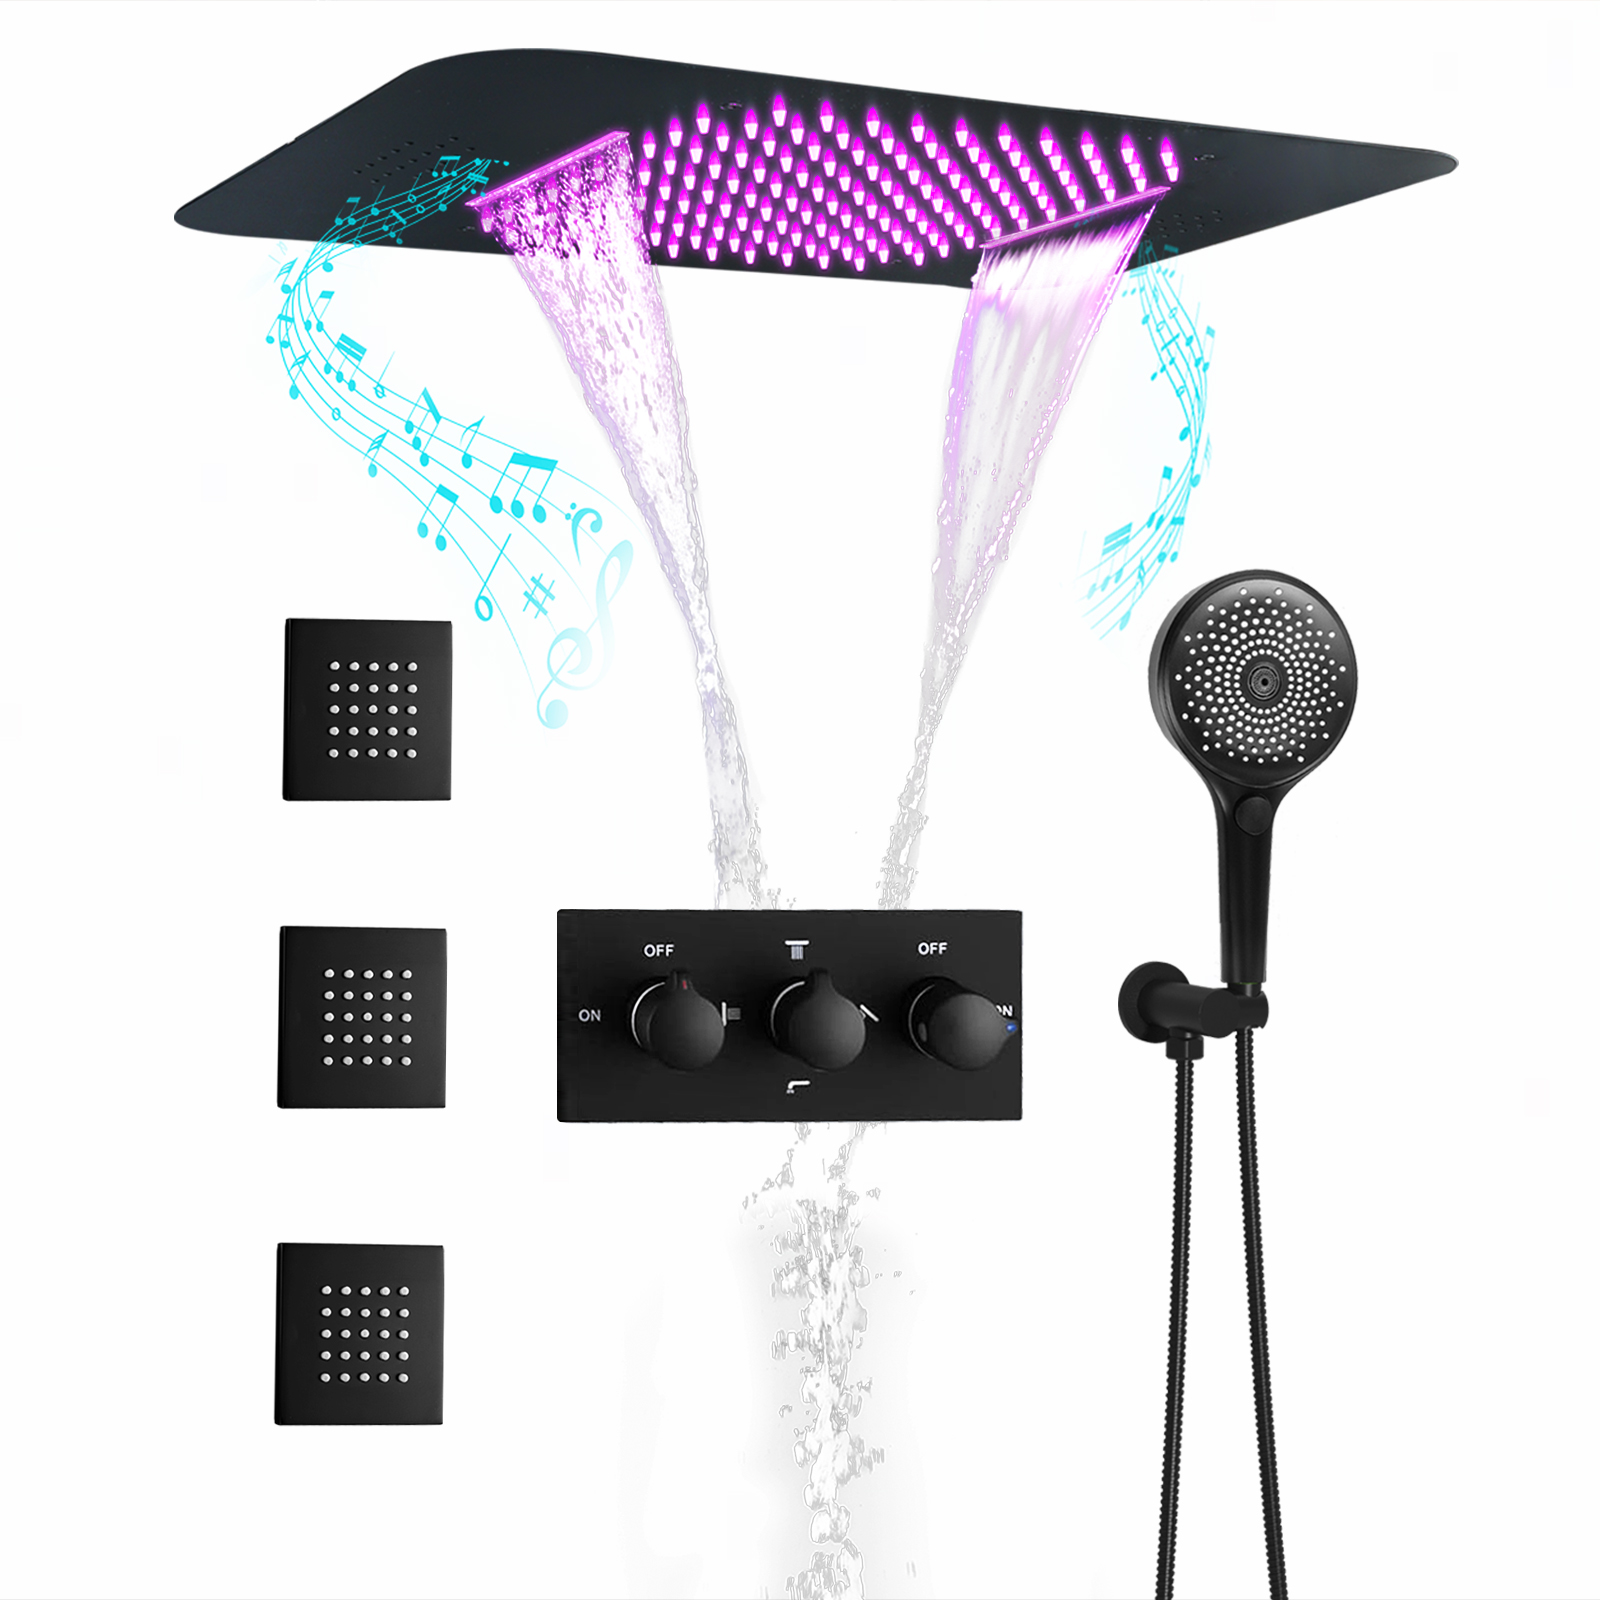 Ducky-sistema de cascada de agua de lluvia, música LED, color negro oscuro, temperatura constante, sistema de grifo de agua de ducha mezclado, Kit de chorro